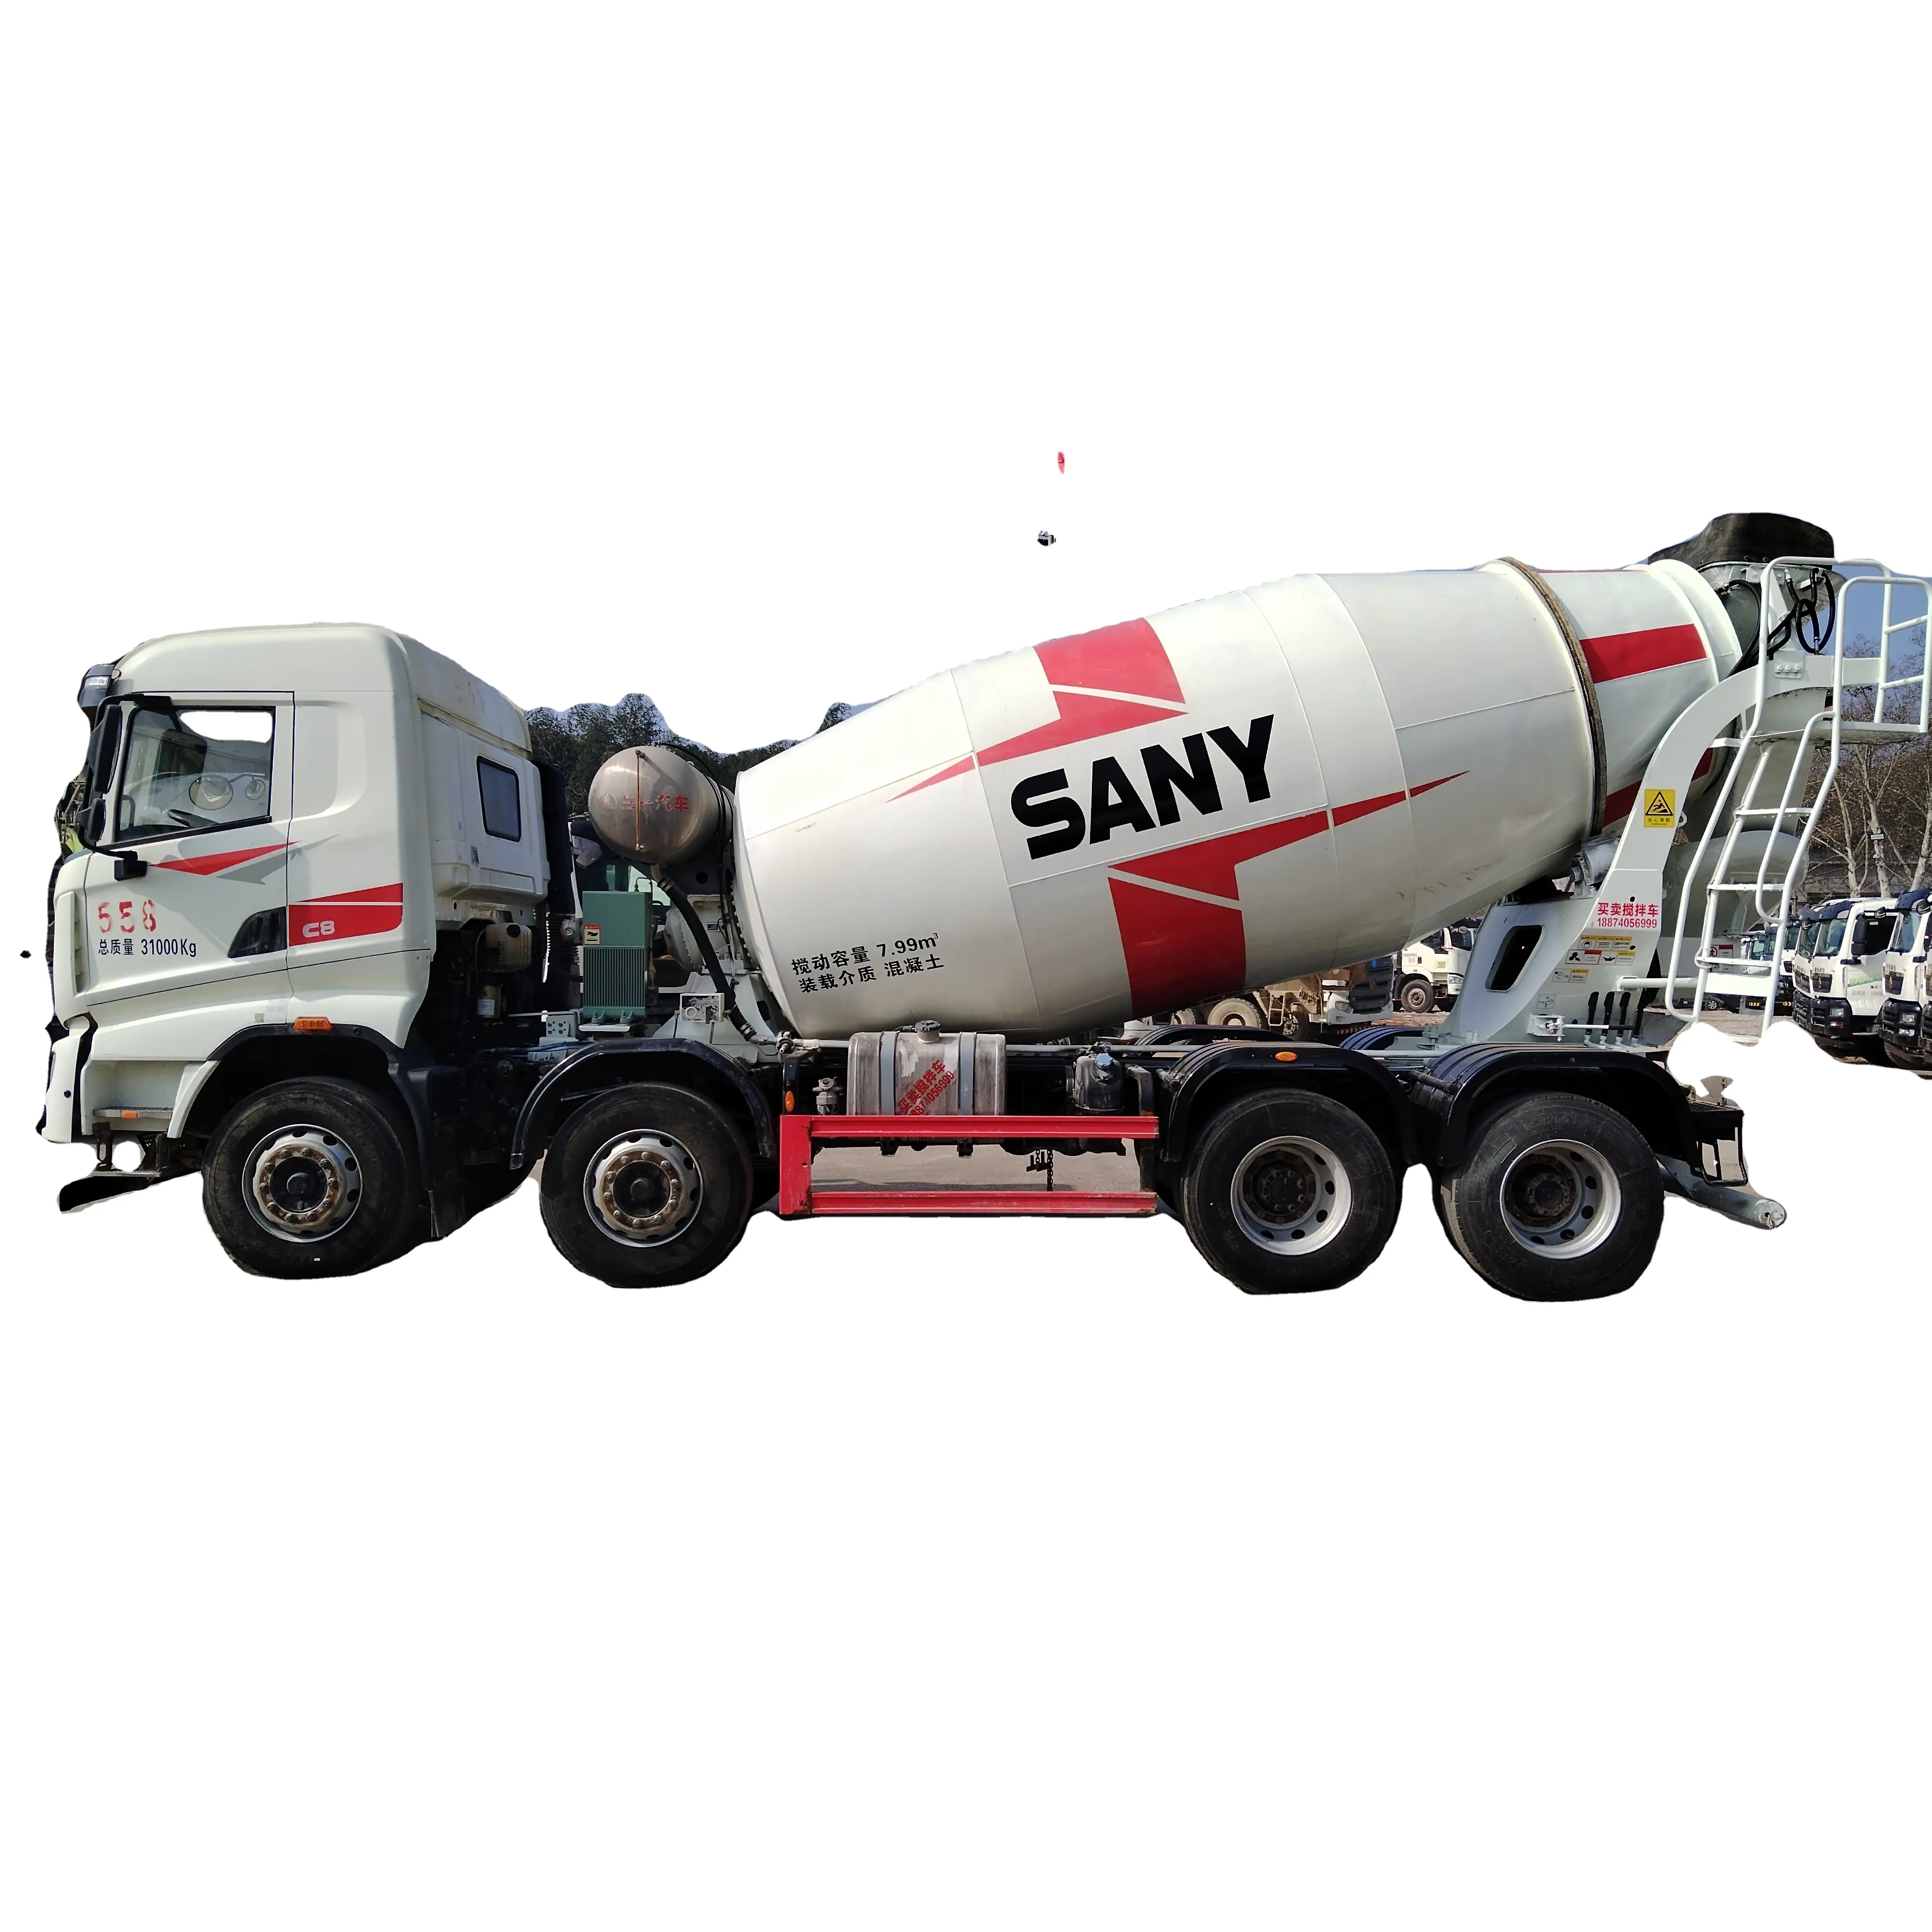 SANY pompa beton truk pengaduk semen bekas harga rendah truk pengaduk beton kendaraan